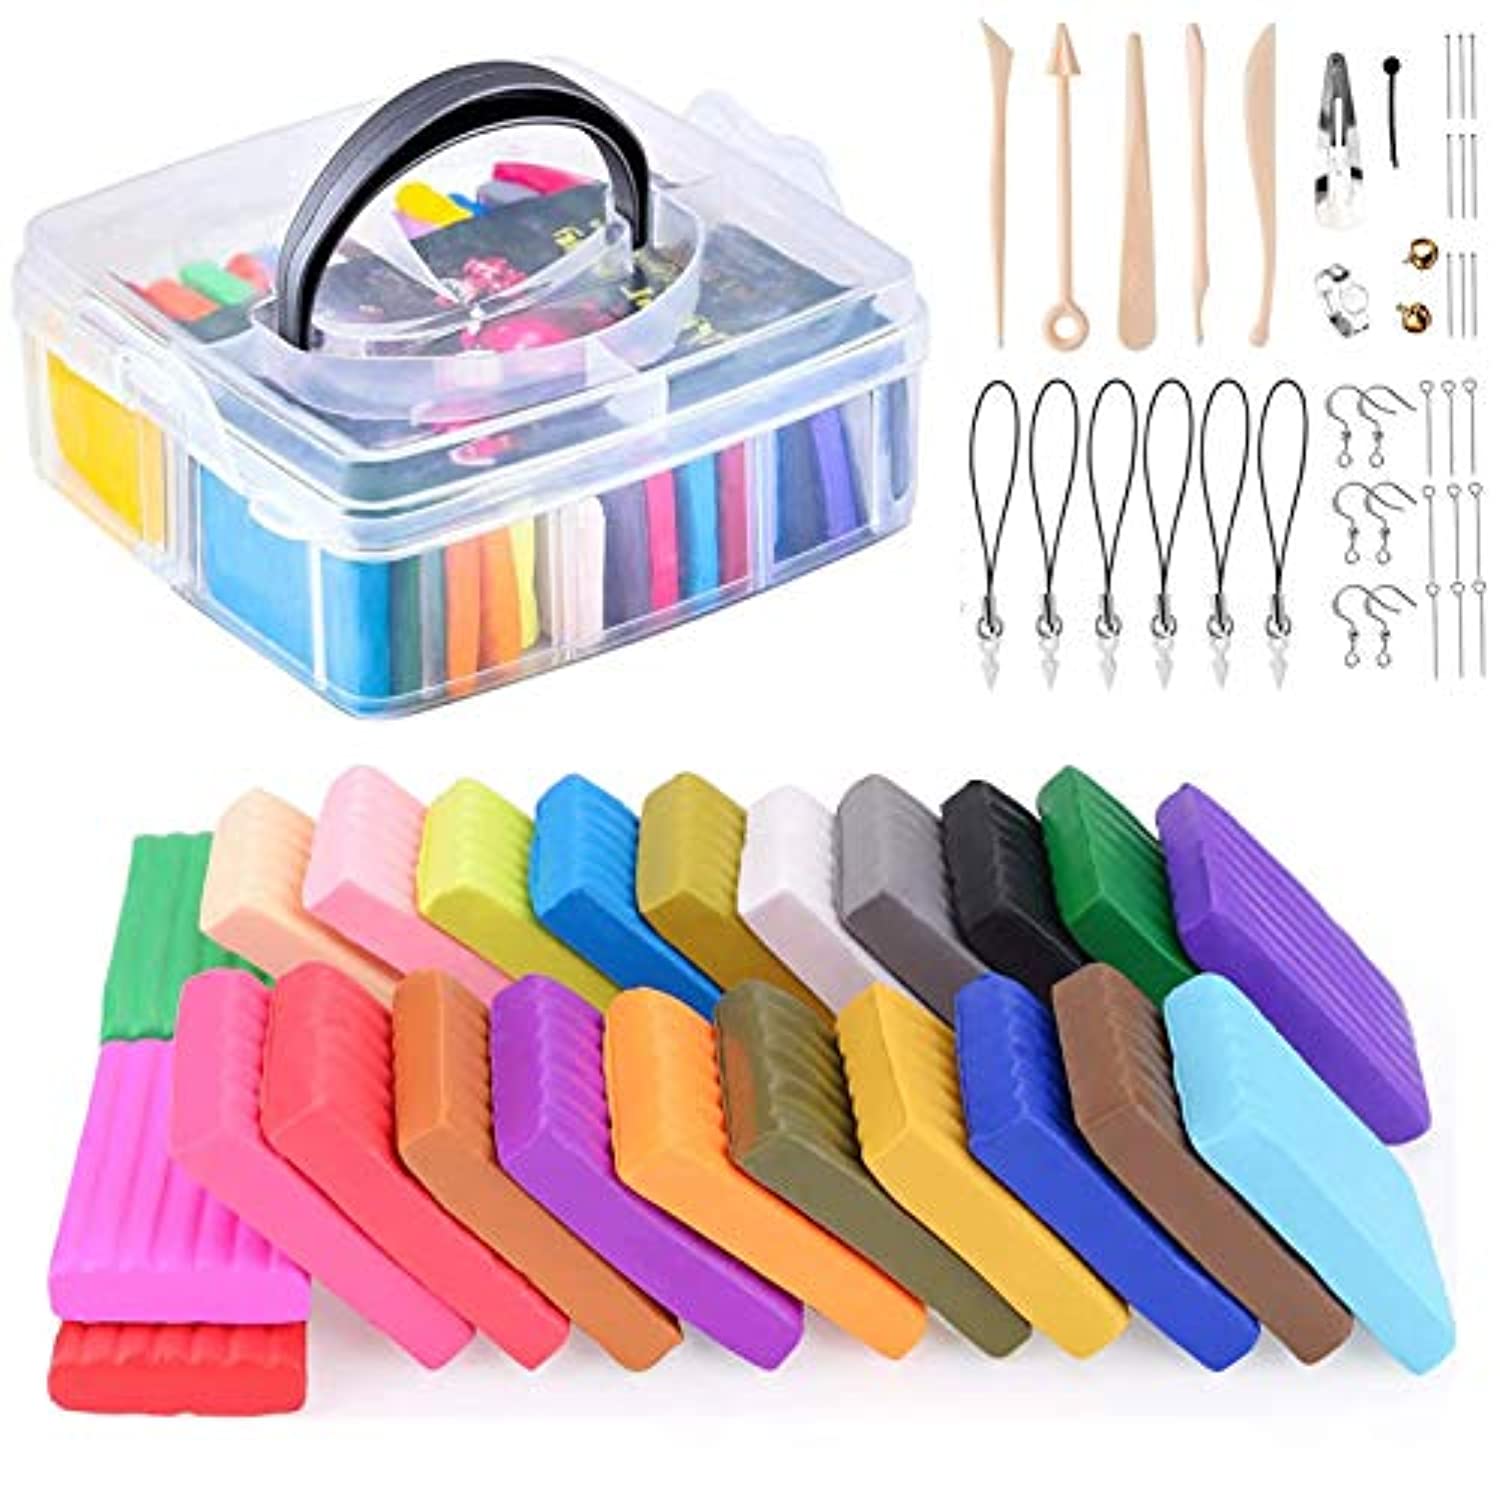 VICNOVA Arcilla polimérica de 50 colores, arcilla para modelar con 29  herramientas y accesorios de arcilla, kit de iniciación de arcilla para  niños